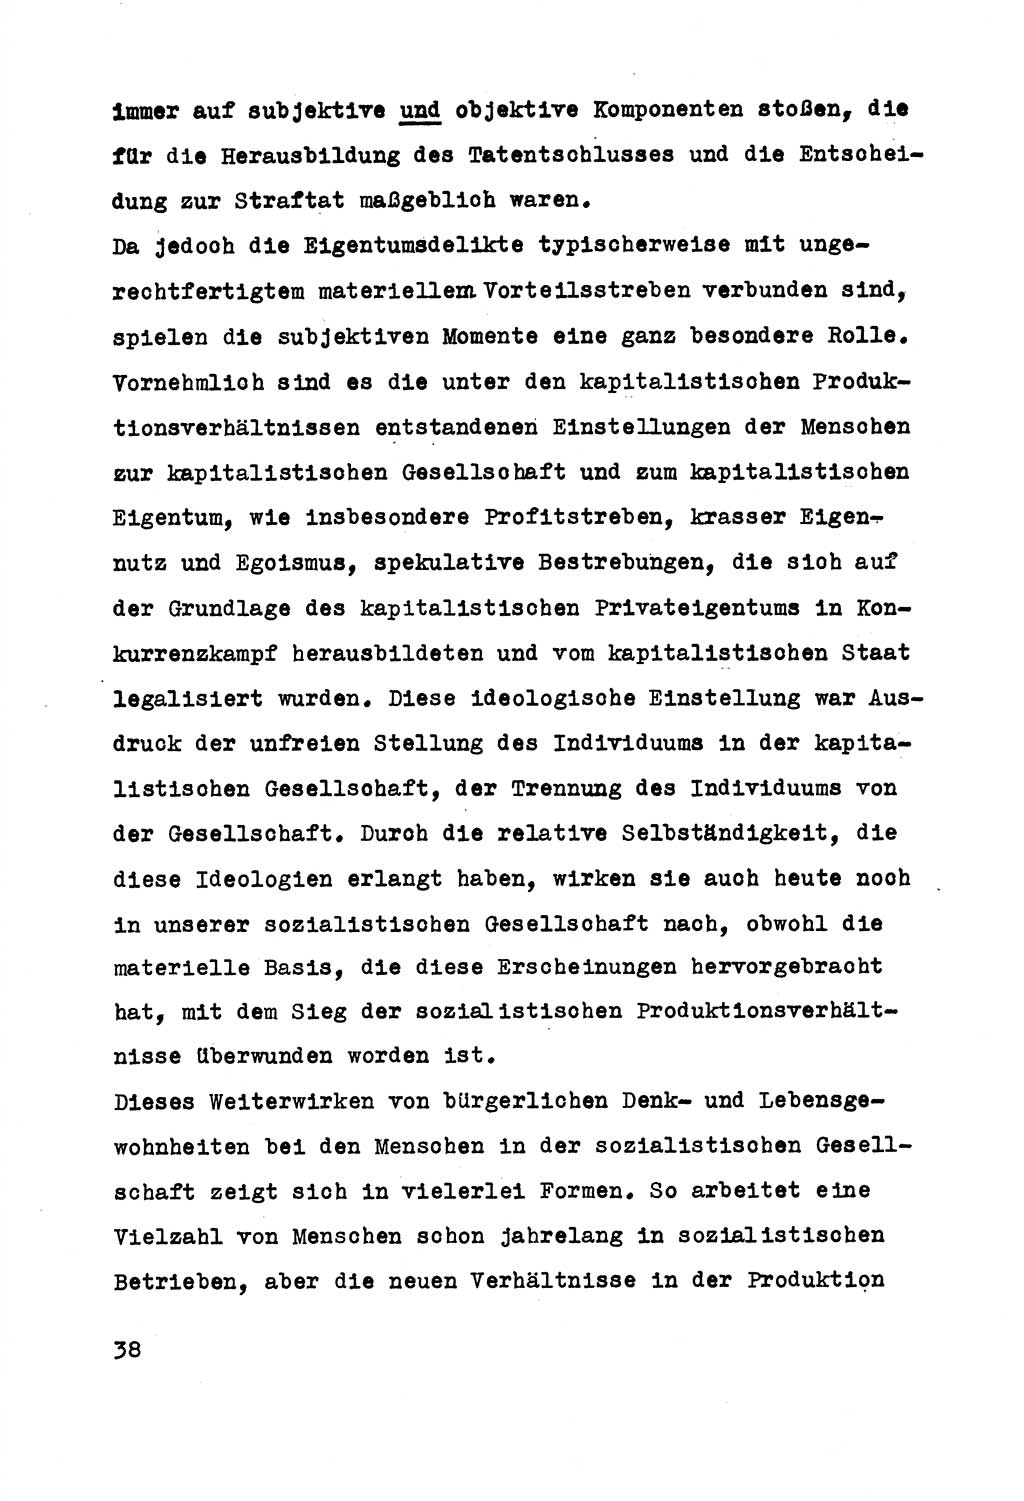 Strafrecht der DDR (Deutsche Demokratische Republik), Besonderer Teil, Lehrmaterial, Heft 5 1970, Seite 38 (Strafr. DDR BT Lehrmat. H. 5 1970, S. 38)